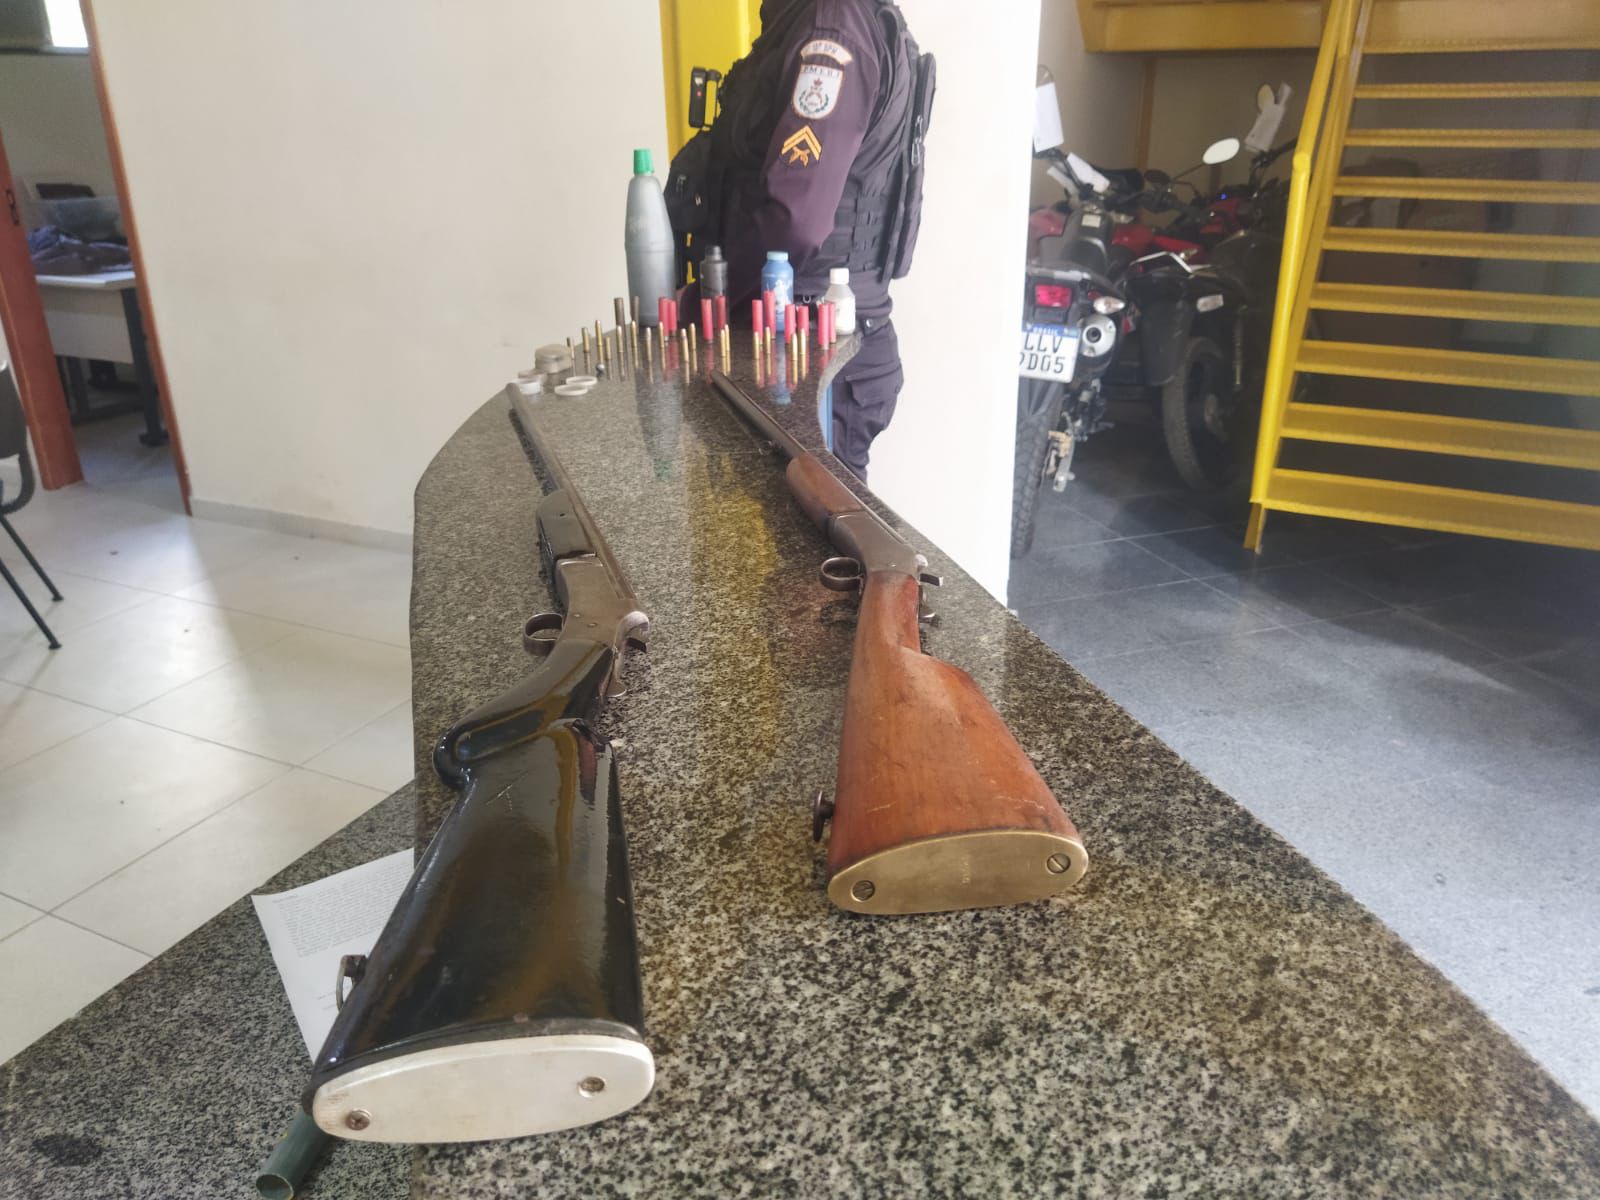 Espingardas e munições são apreendidas em operação policial em Valença